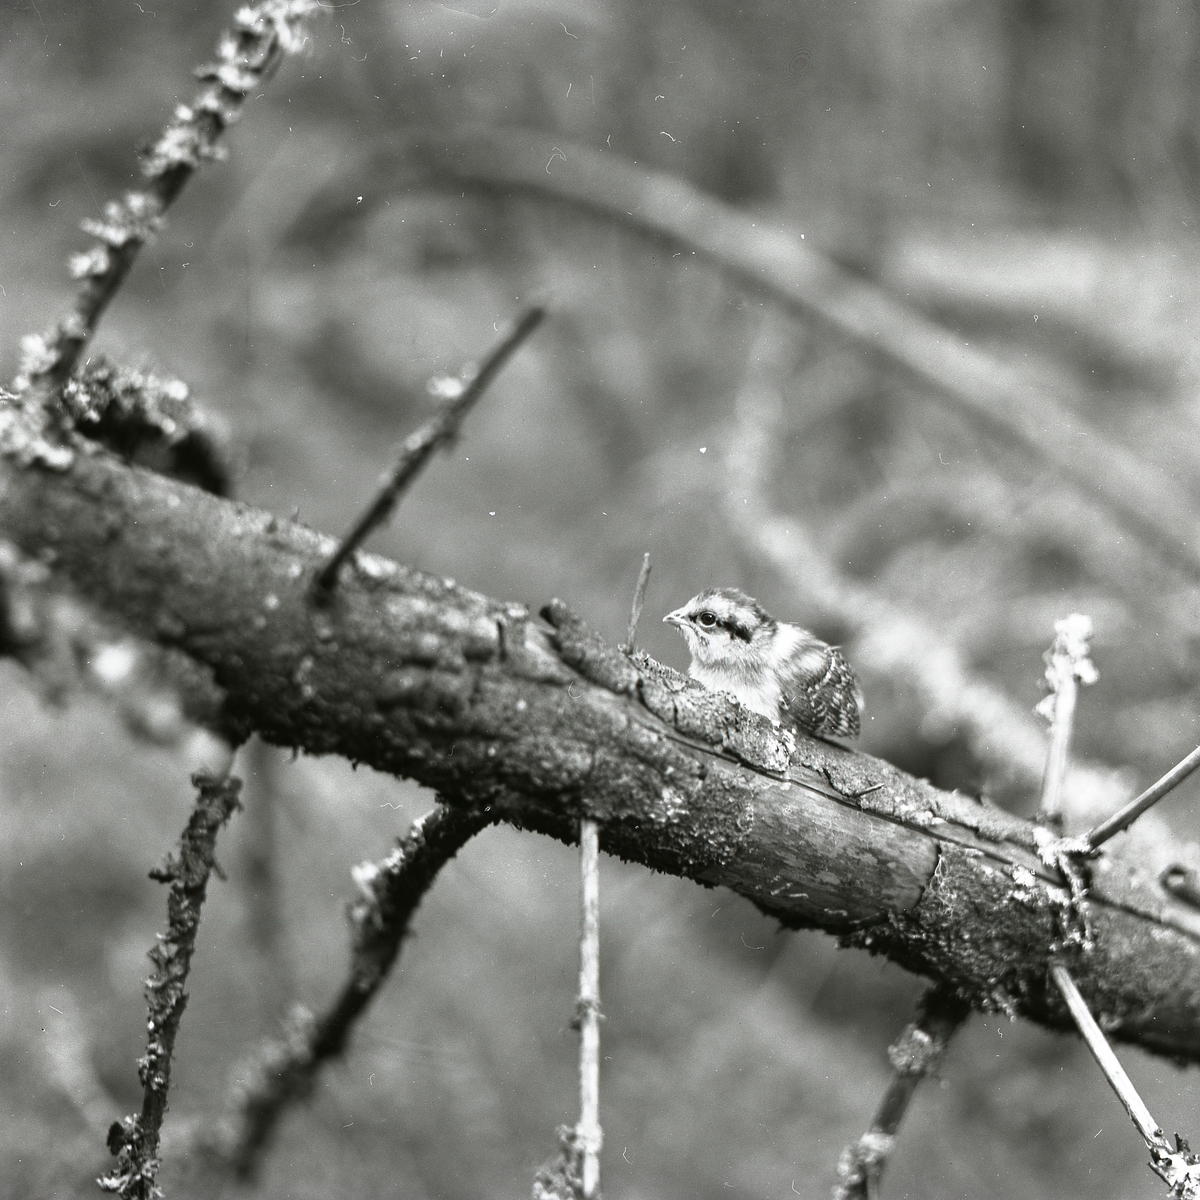 Fågelunge av Järpe sitter på en torr gren med kvistar 23 juni 1957.